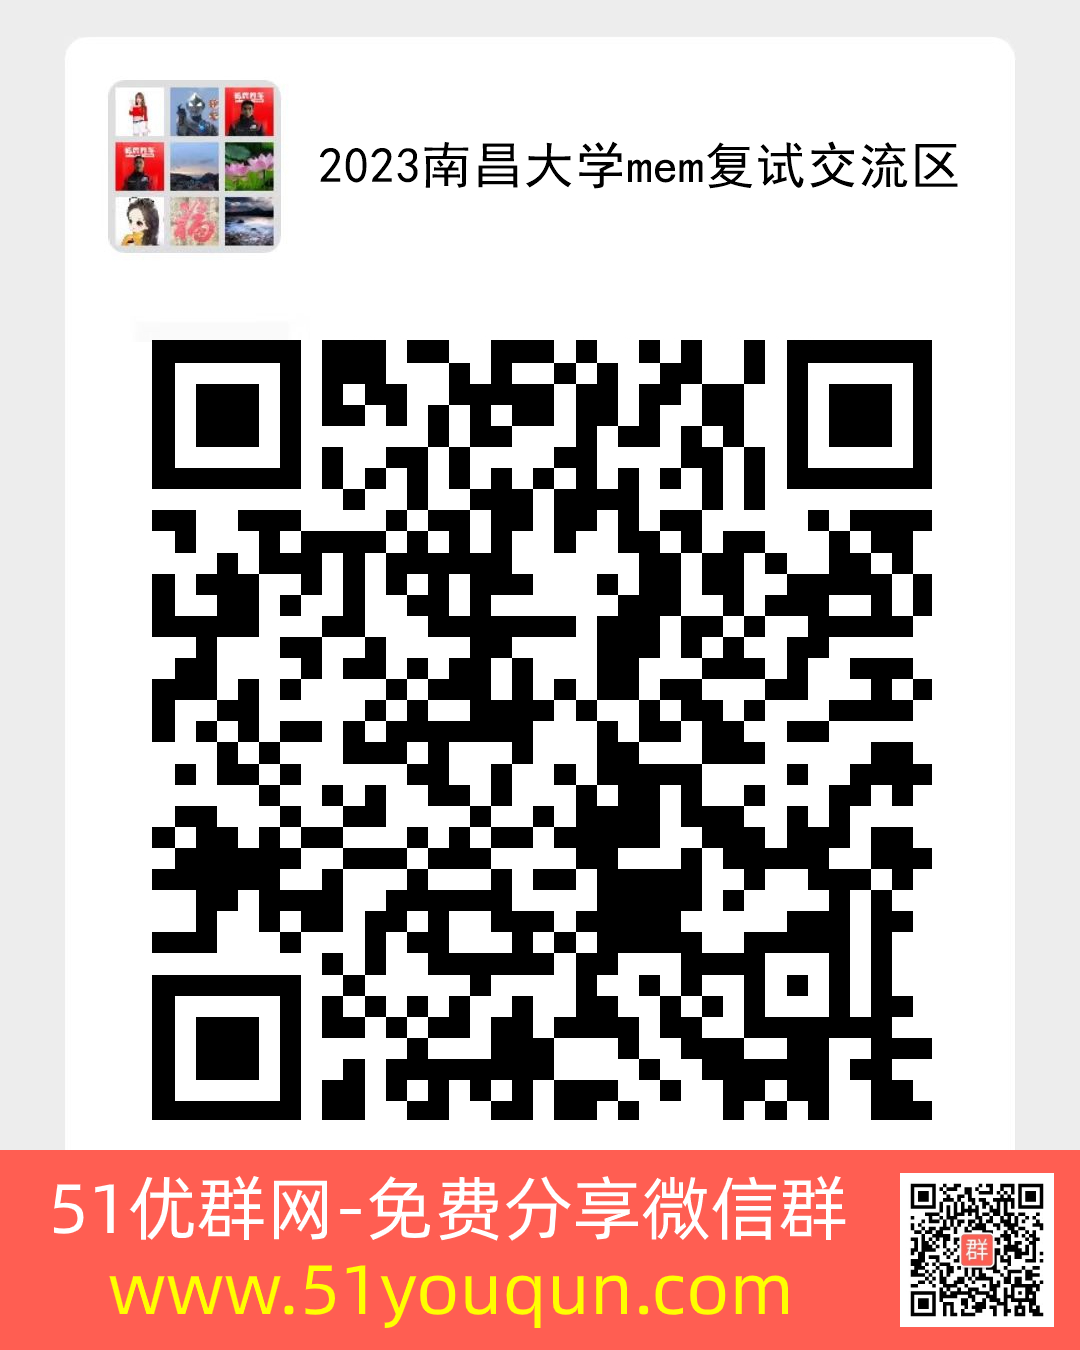 2023南昌大学mem复试交流区-全职·兼职微信群